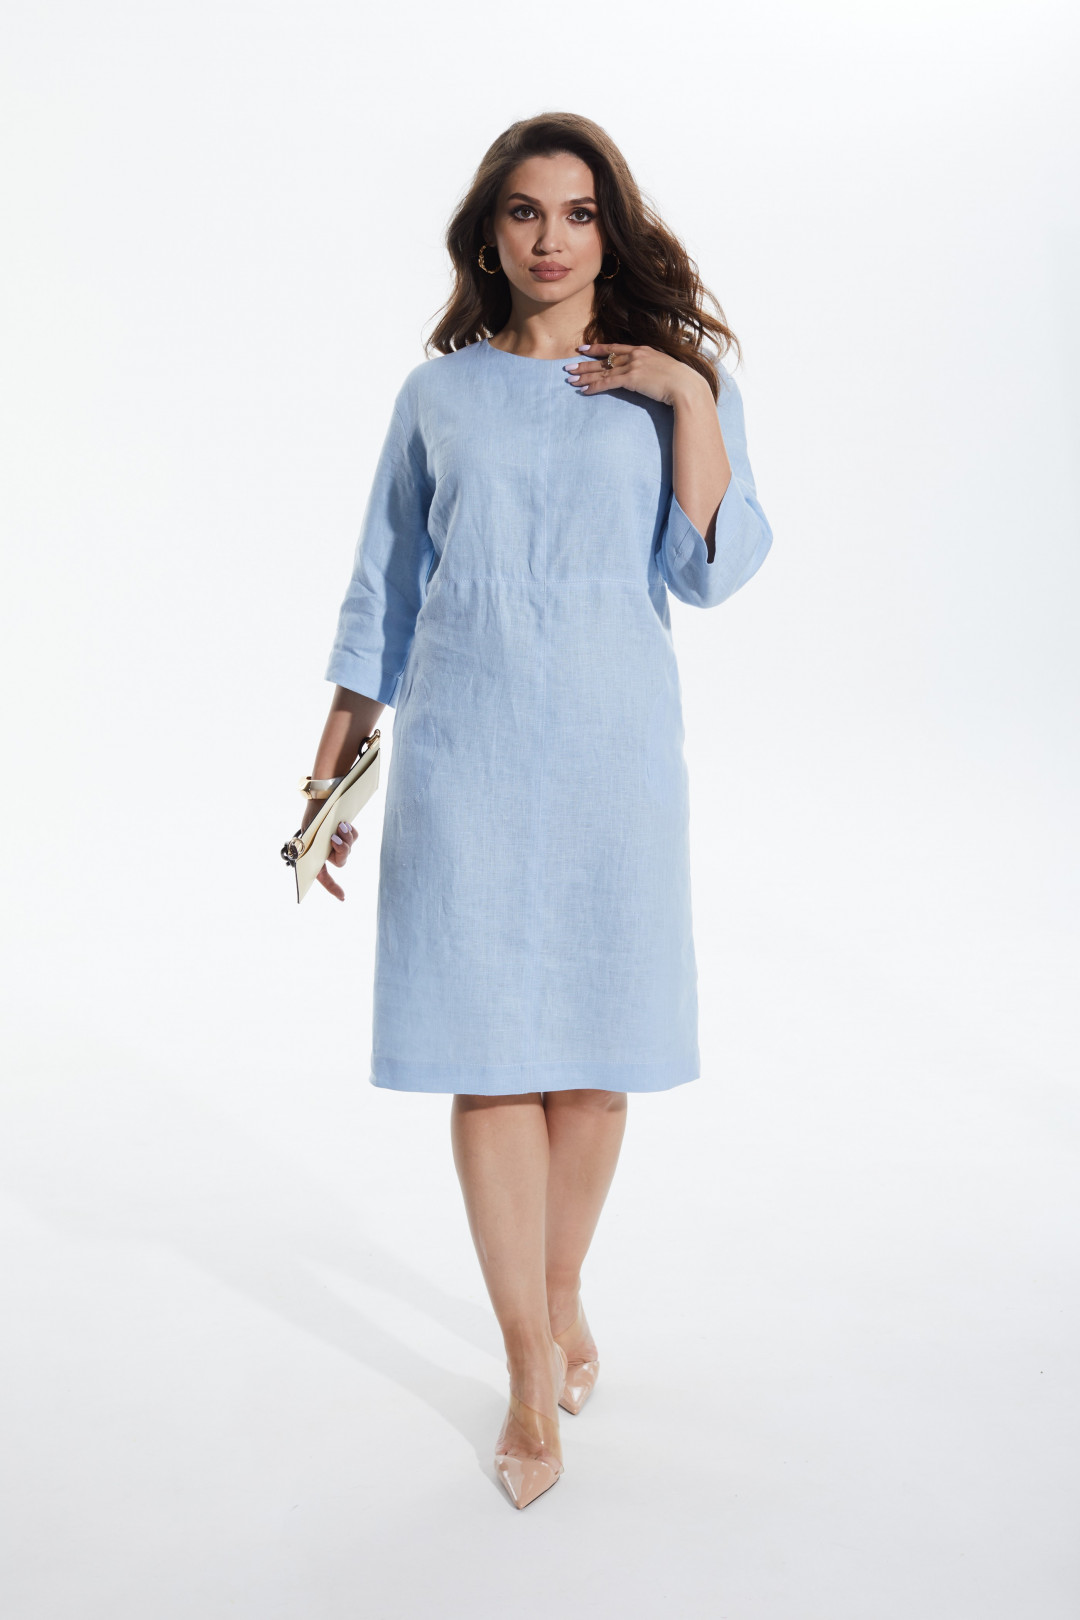 Платье MALI 422-058 голубой